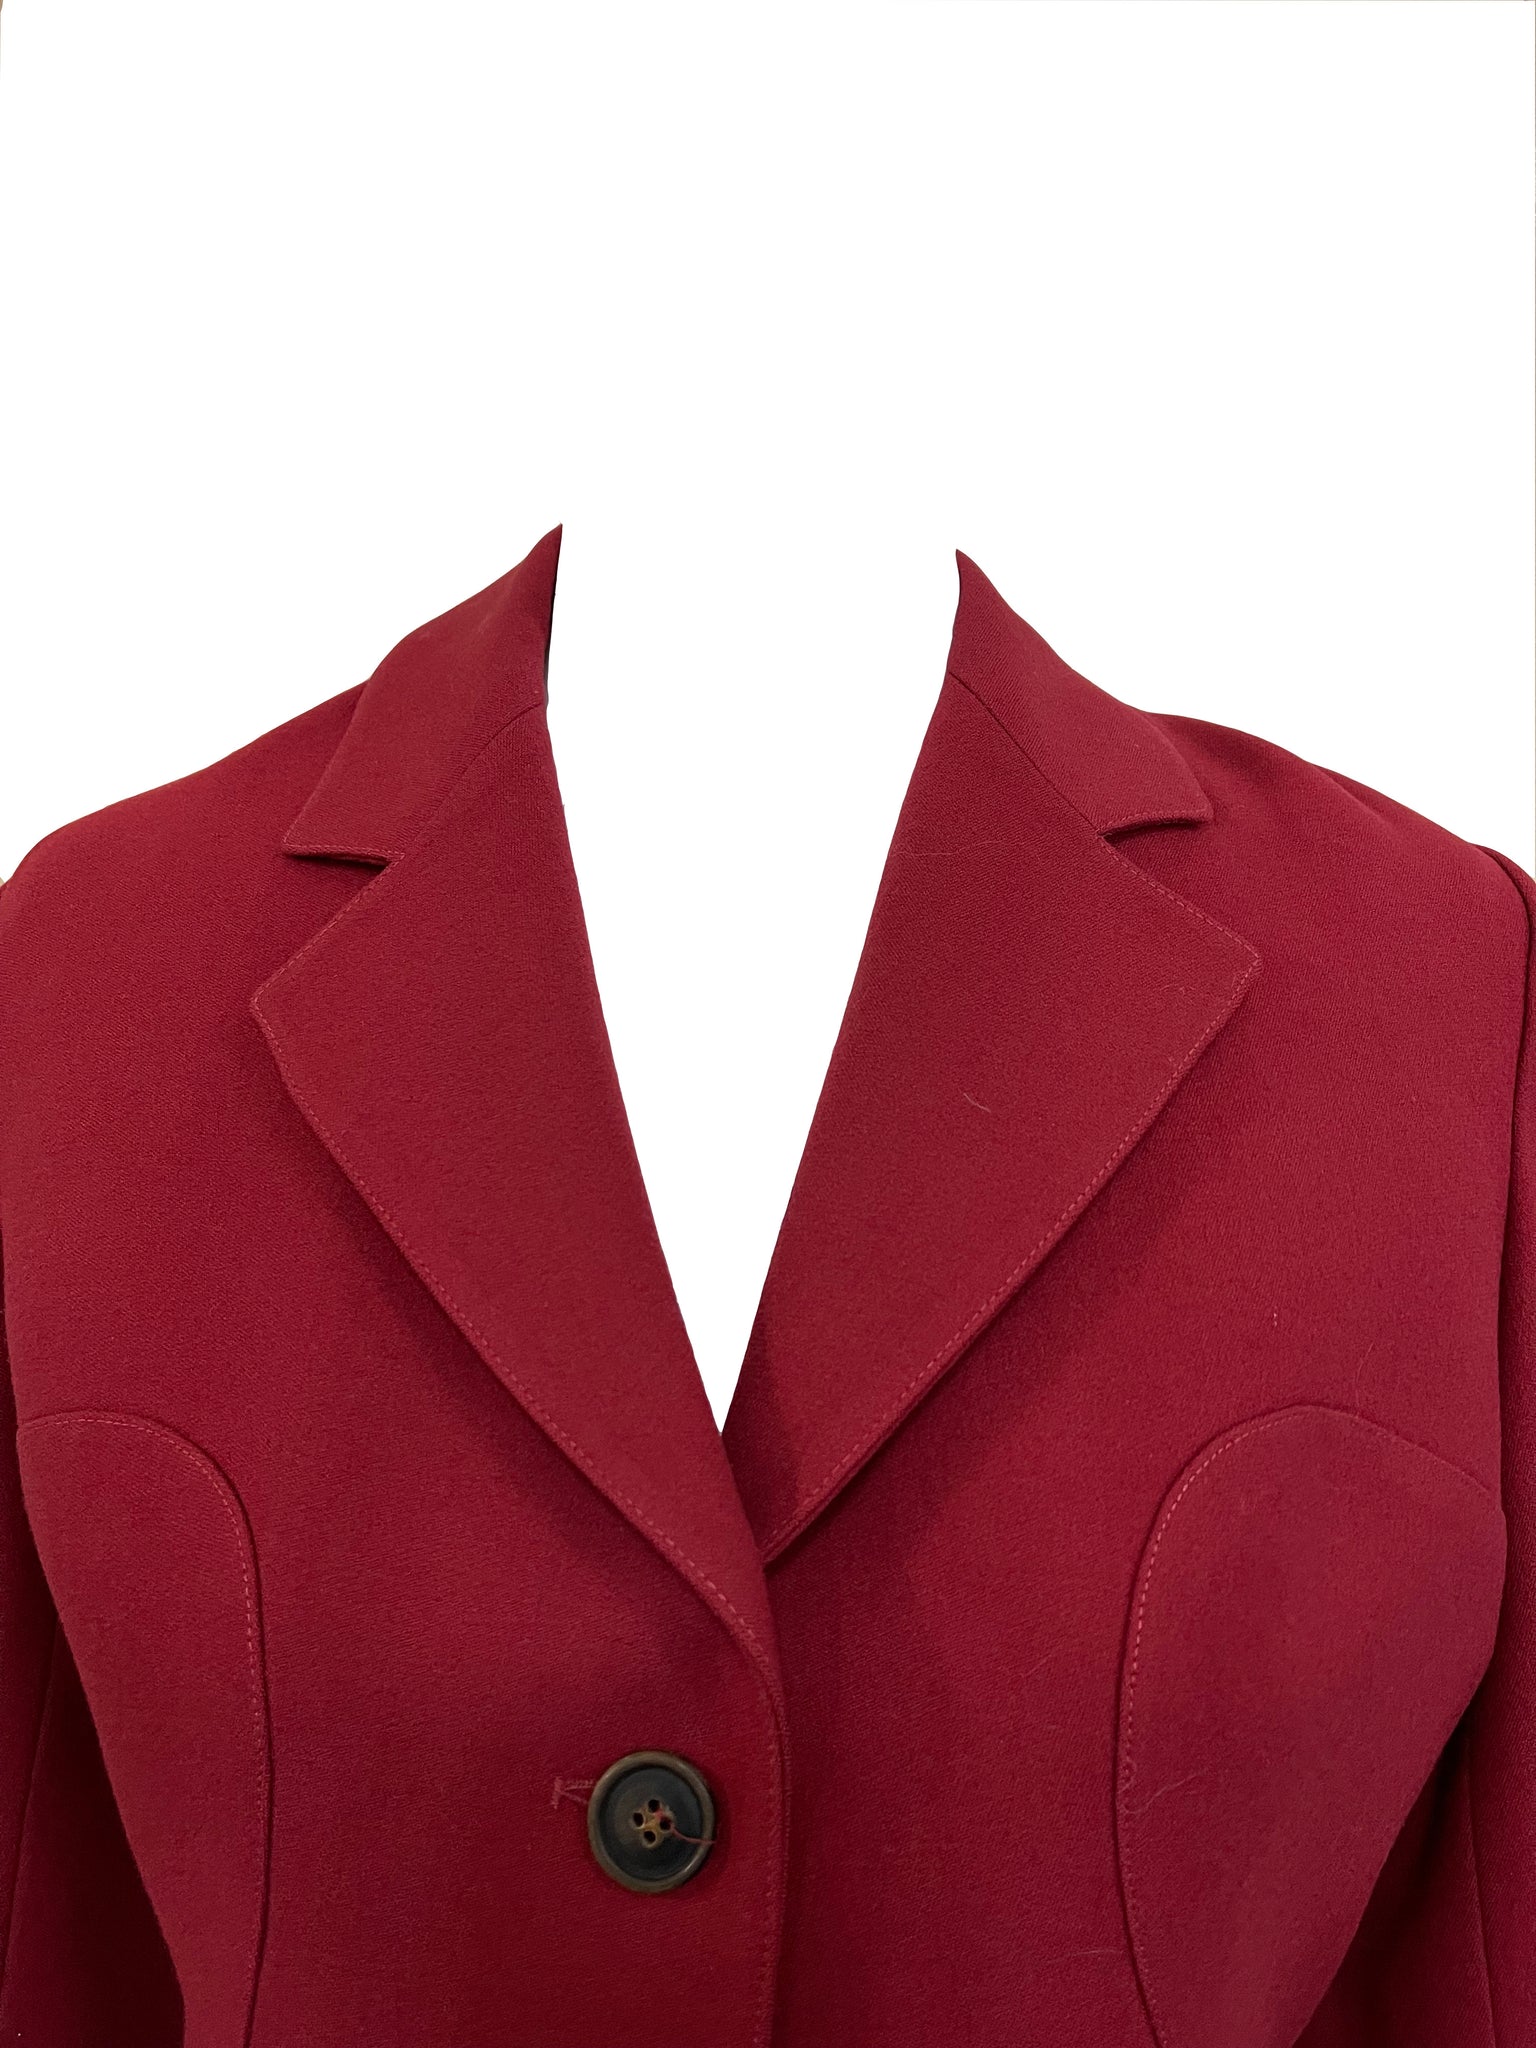 Azzedine Alaia Tailored Maroon Tailored Jacket COLLAR 4 of 7